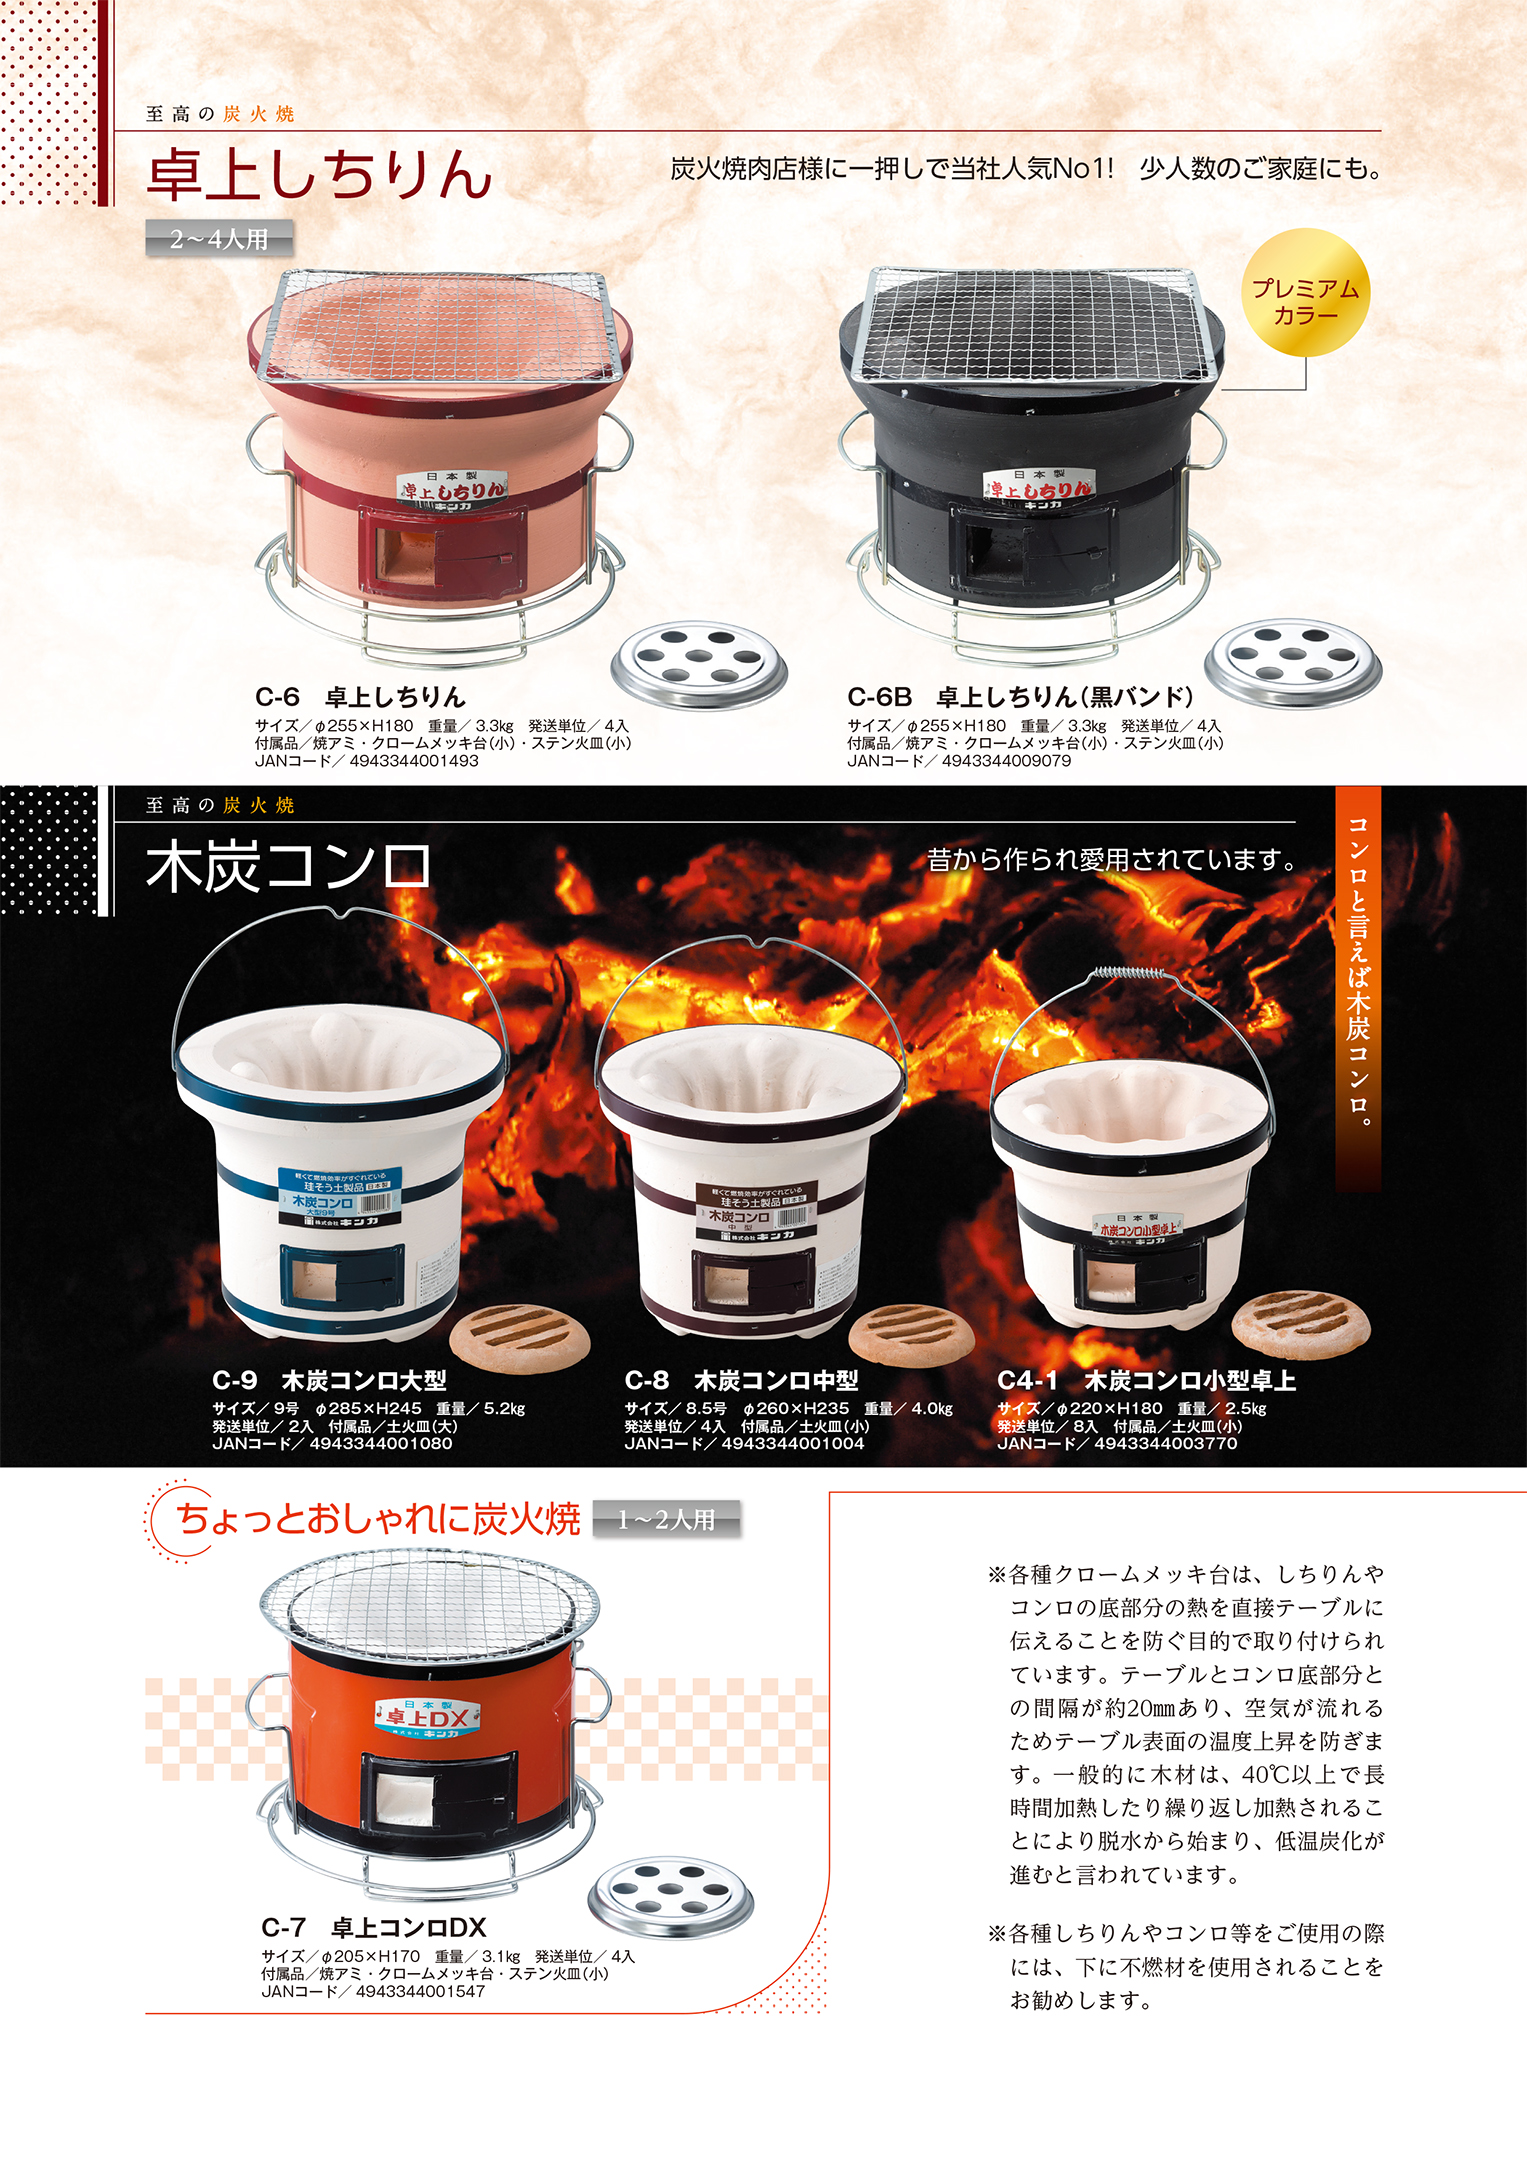 厨房機器：珪藻土炭火式・木炭式コンロの総合メーカー・キンカ株式会社 